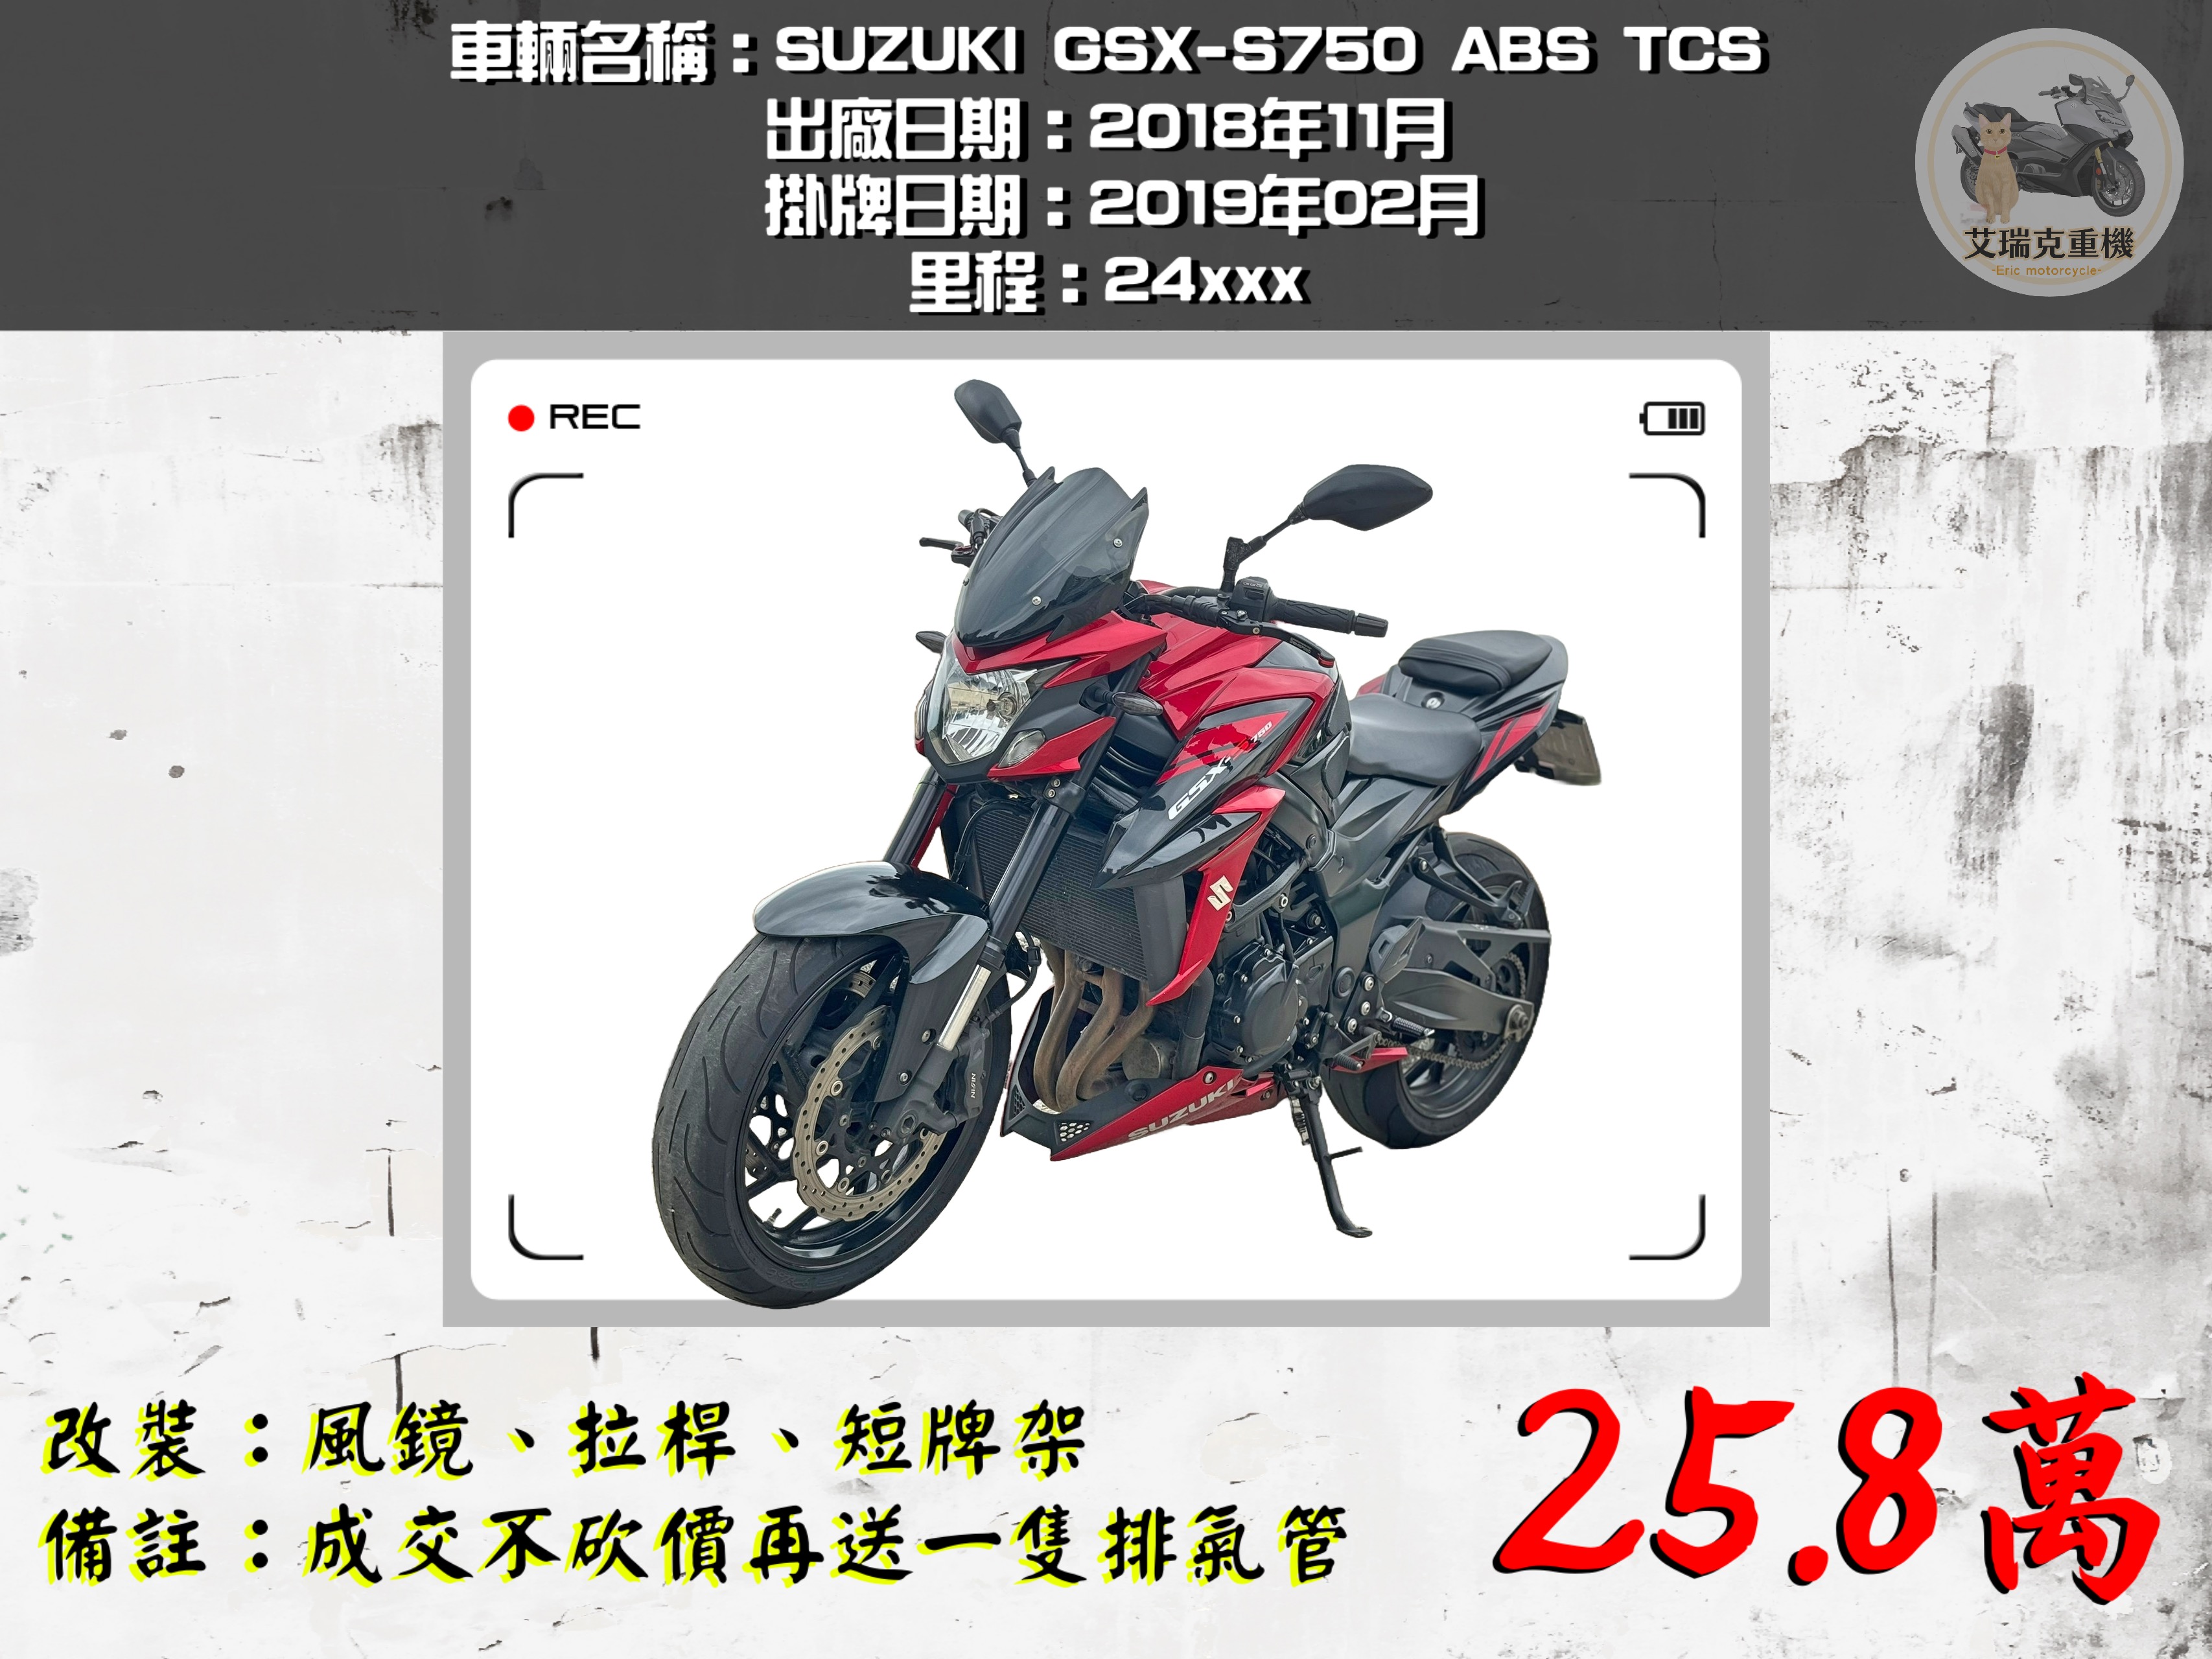 SUZUKI GSX-R600 - 中古/二手車出售中  SUZUKI GSX-S750 ABS TCS | 艾瑞克重機